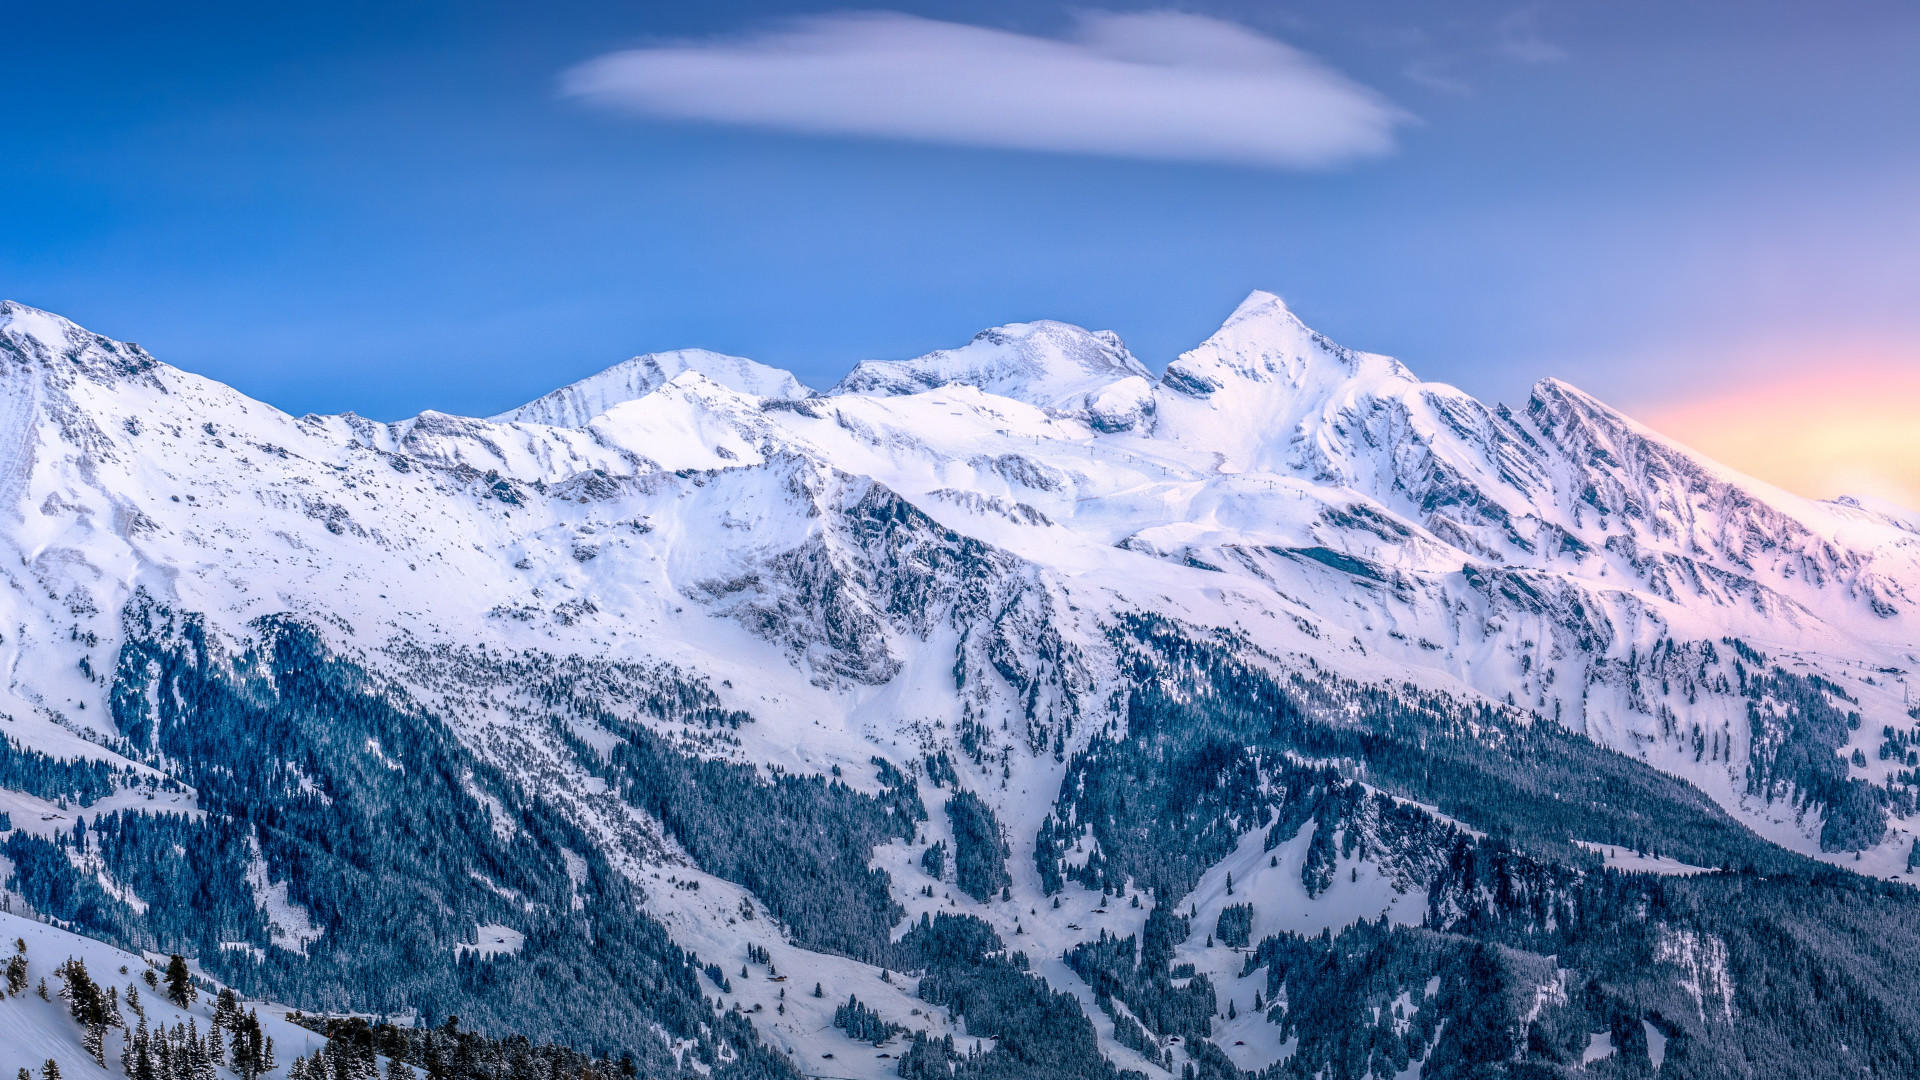 Alpine scenery from Kleine Scheidegg, Switzerland wallpaper 1920x1080